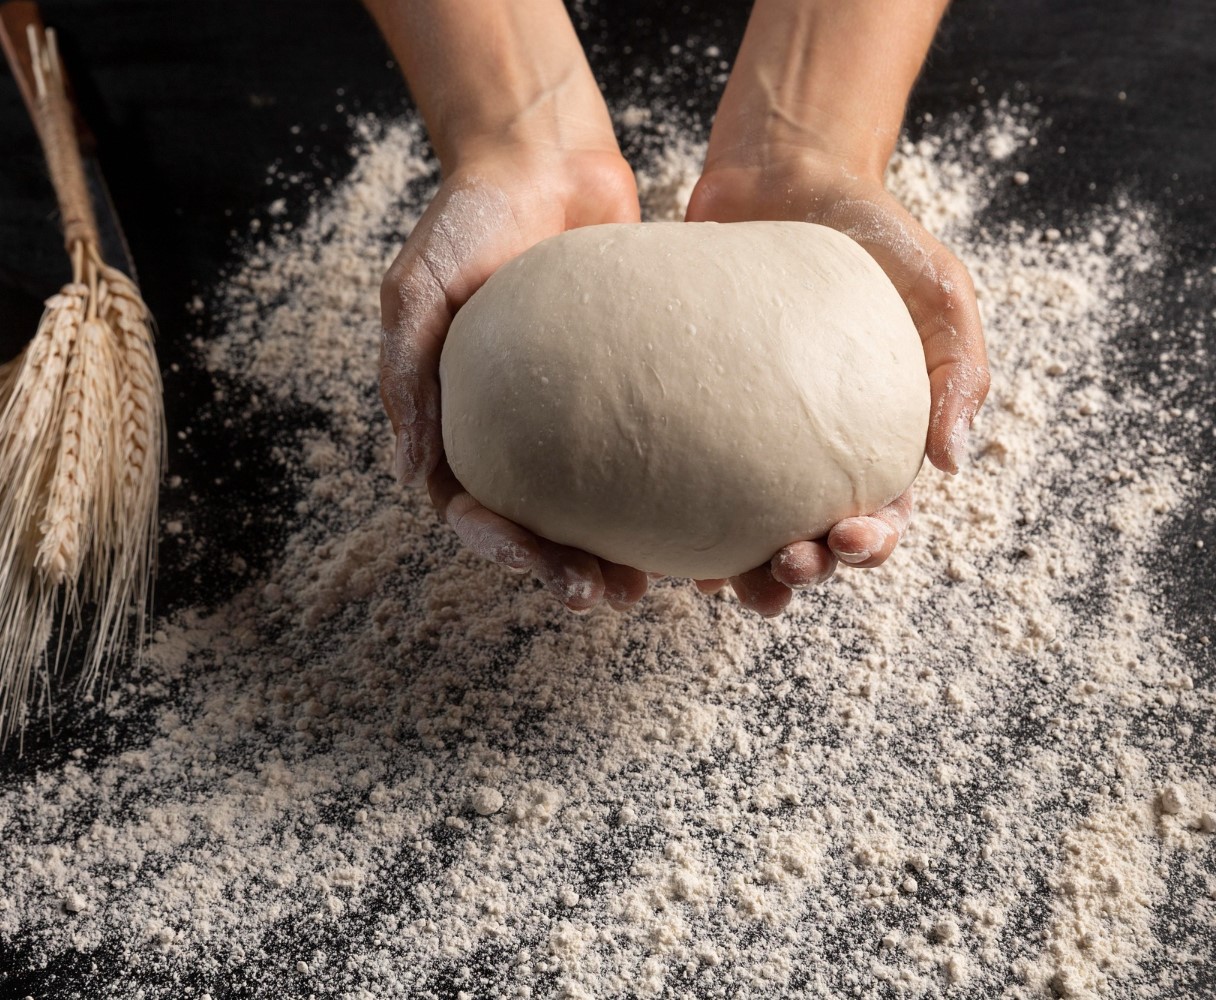     Des farines pour remplacer l’usage de la farine de blé
